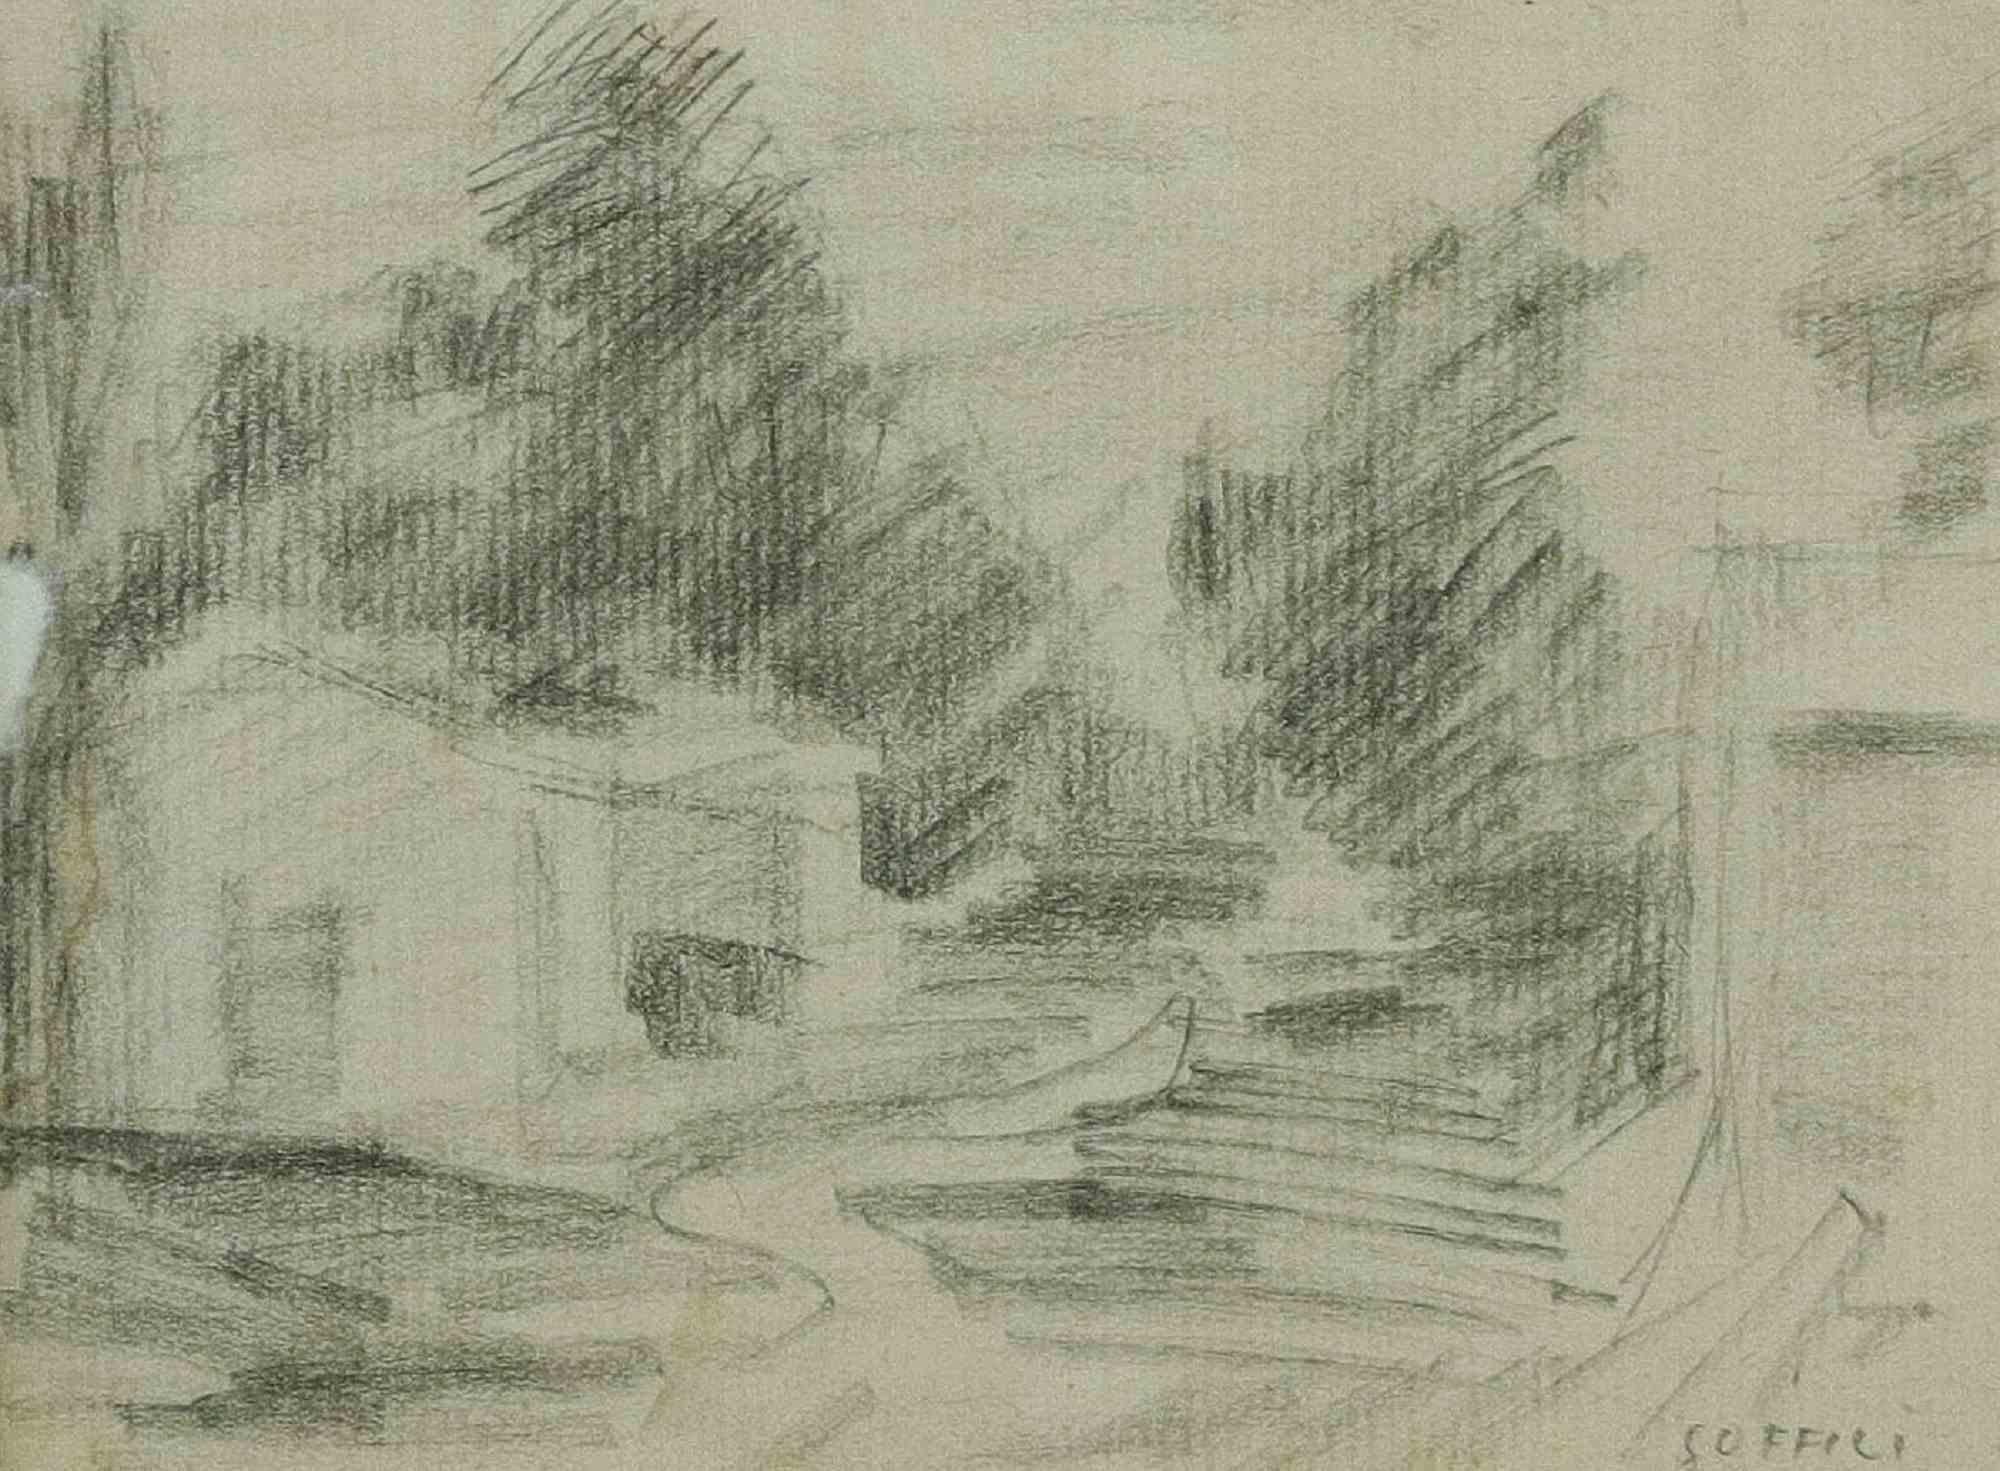 Landscape ist ein originelles modernes Kunstwerk von Ardengo Soffici aus dem Jahr 1932.

Bleistift auf Büttenpapier.

Handsigniert unten rechts.

Linker Rand Restaurierungszeichen, insgesamt in gutem Zustand.

Mit Passepartout (13 x 17,5) und